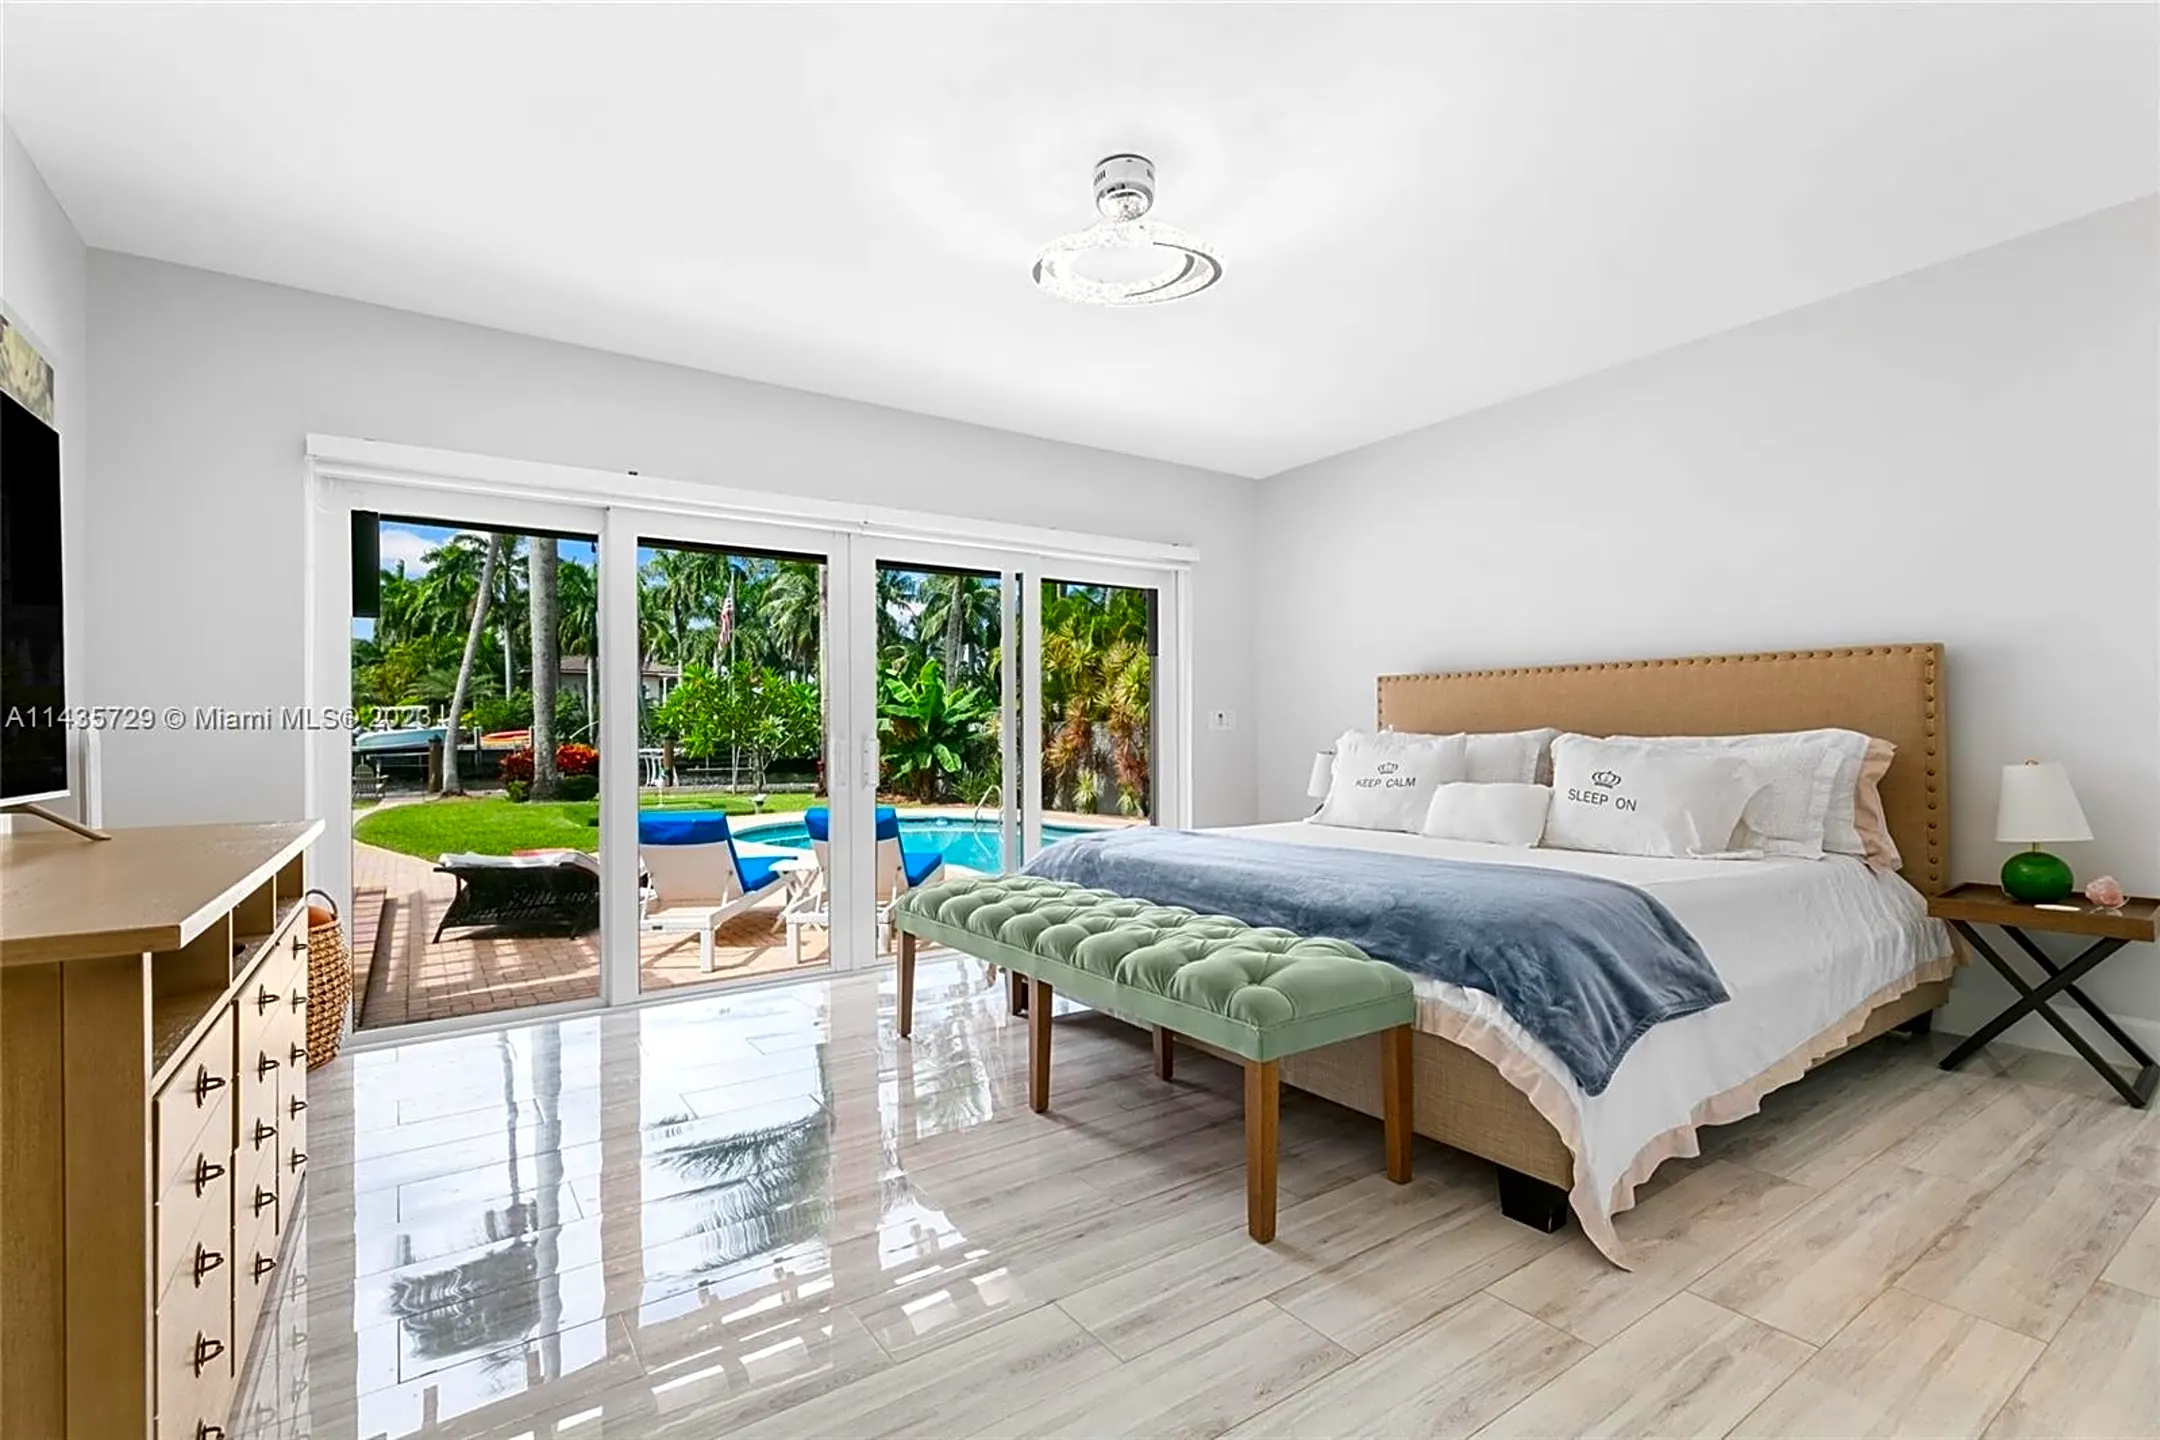 Bedroom - 913 Coconut Dr - Fort Lauderdale, FL